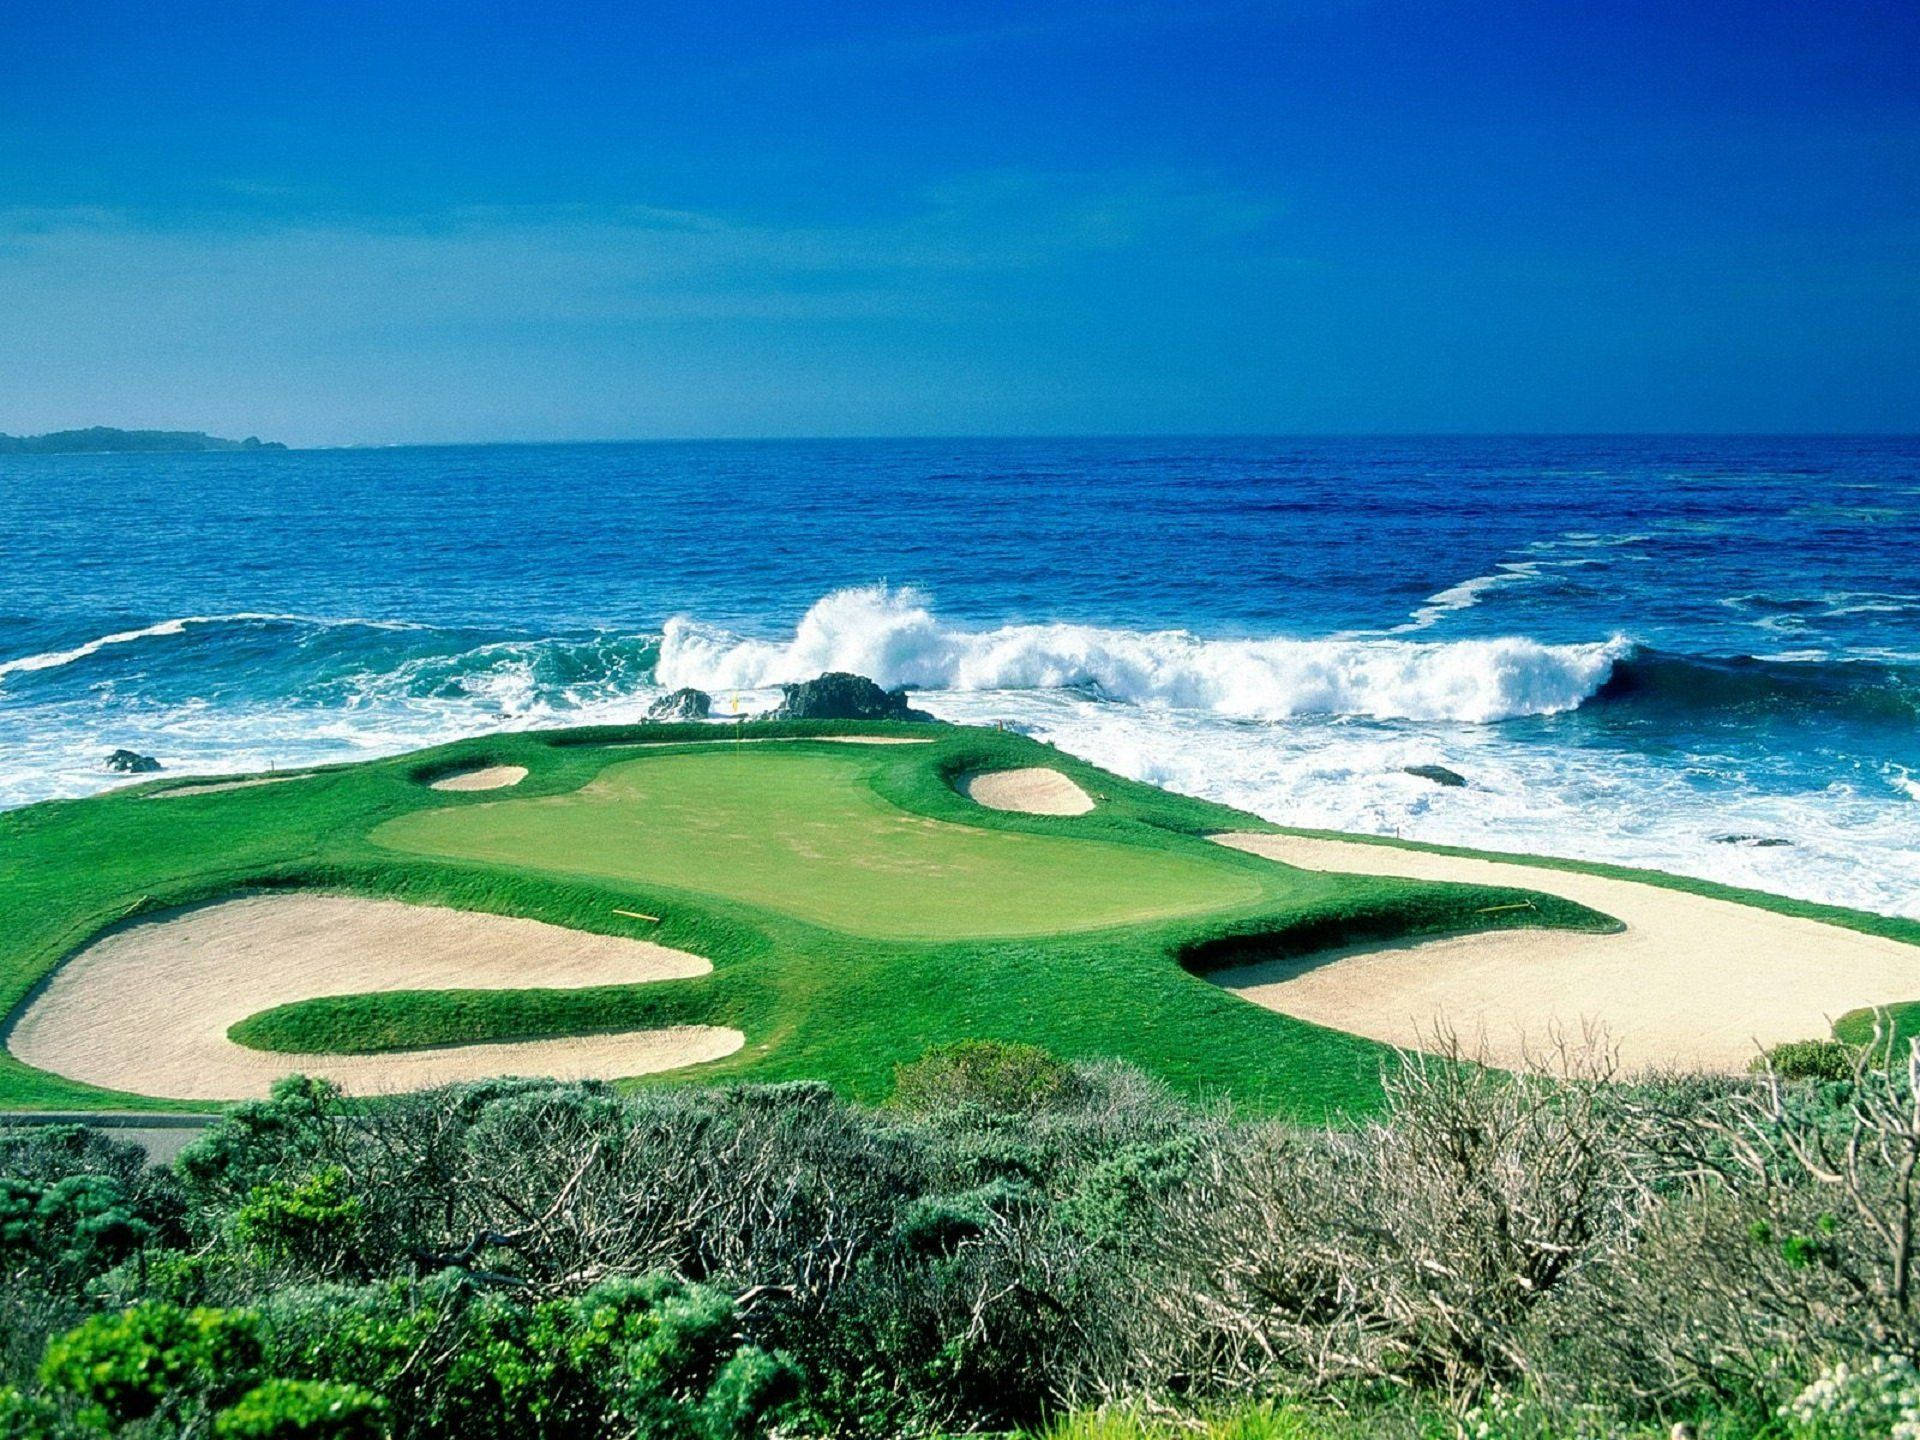 Pebble Beach Golf Course Desktop Wallpaper